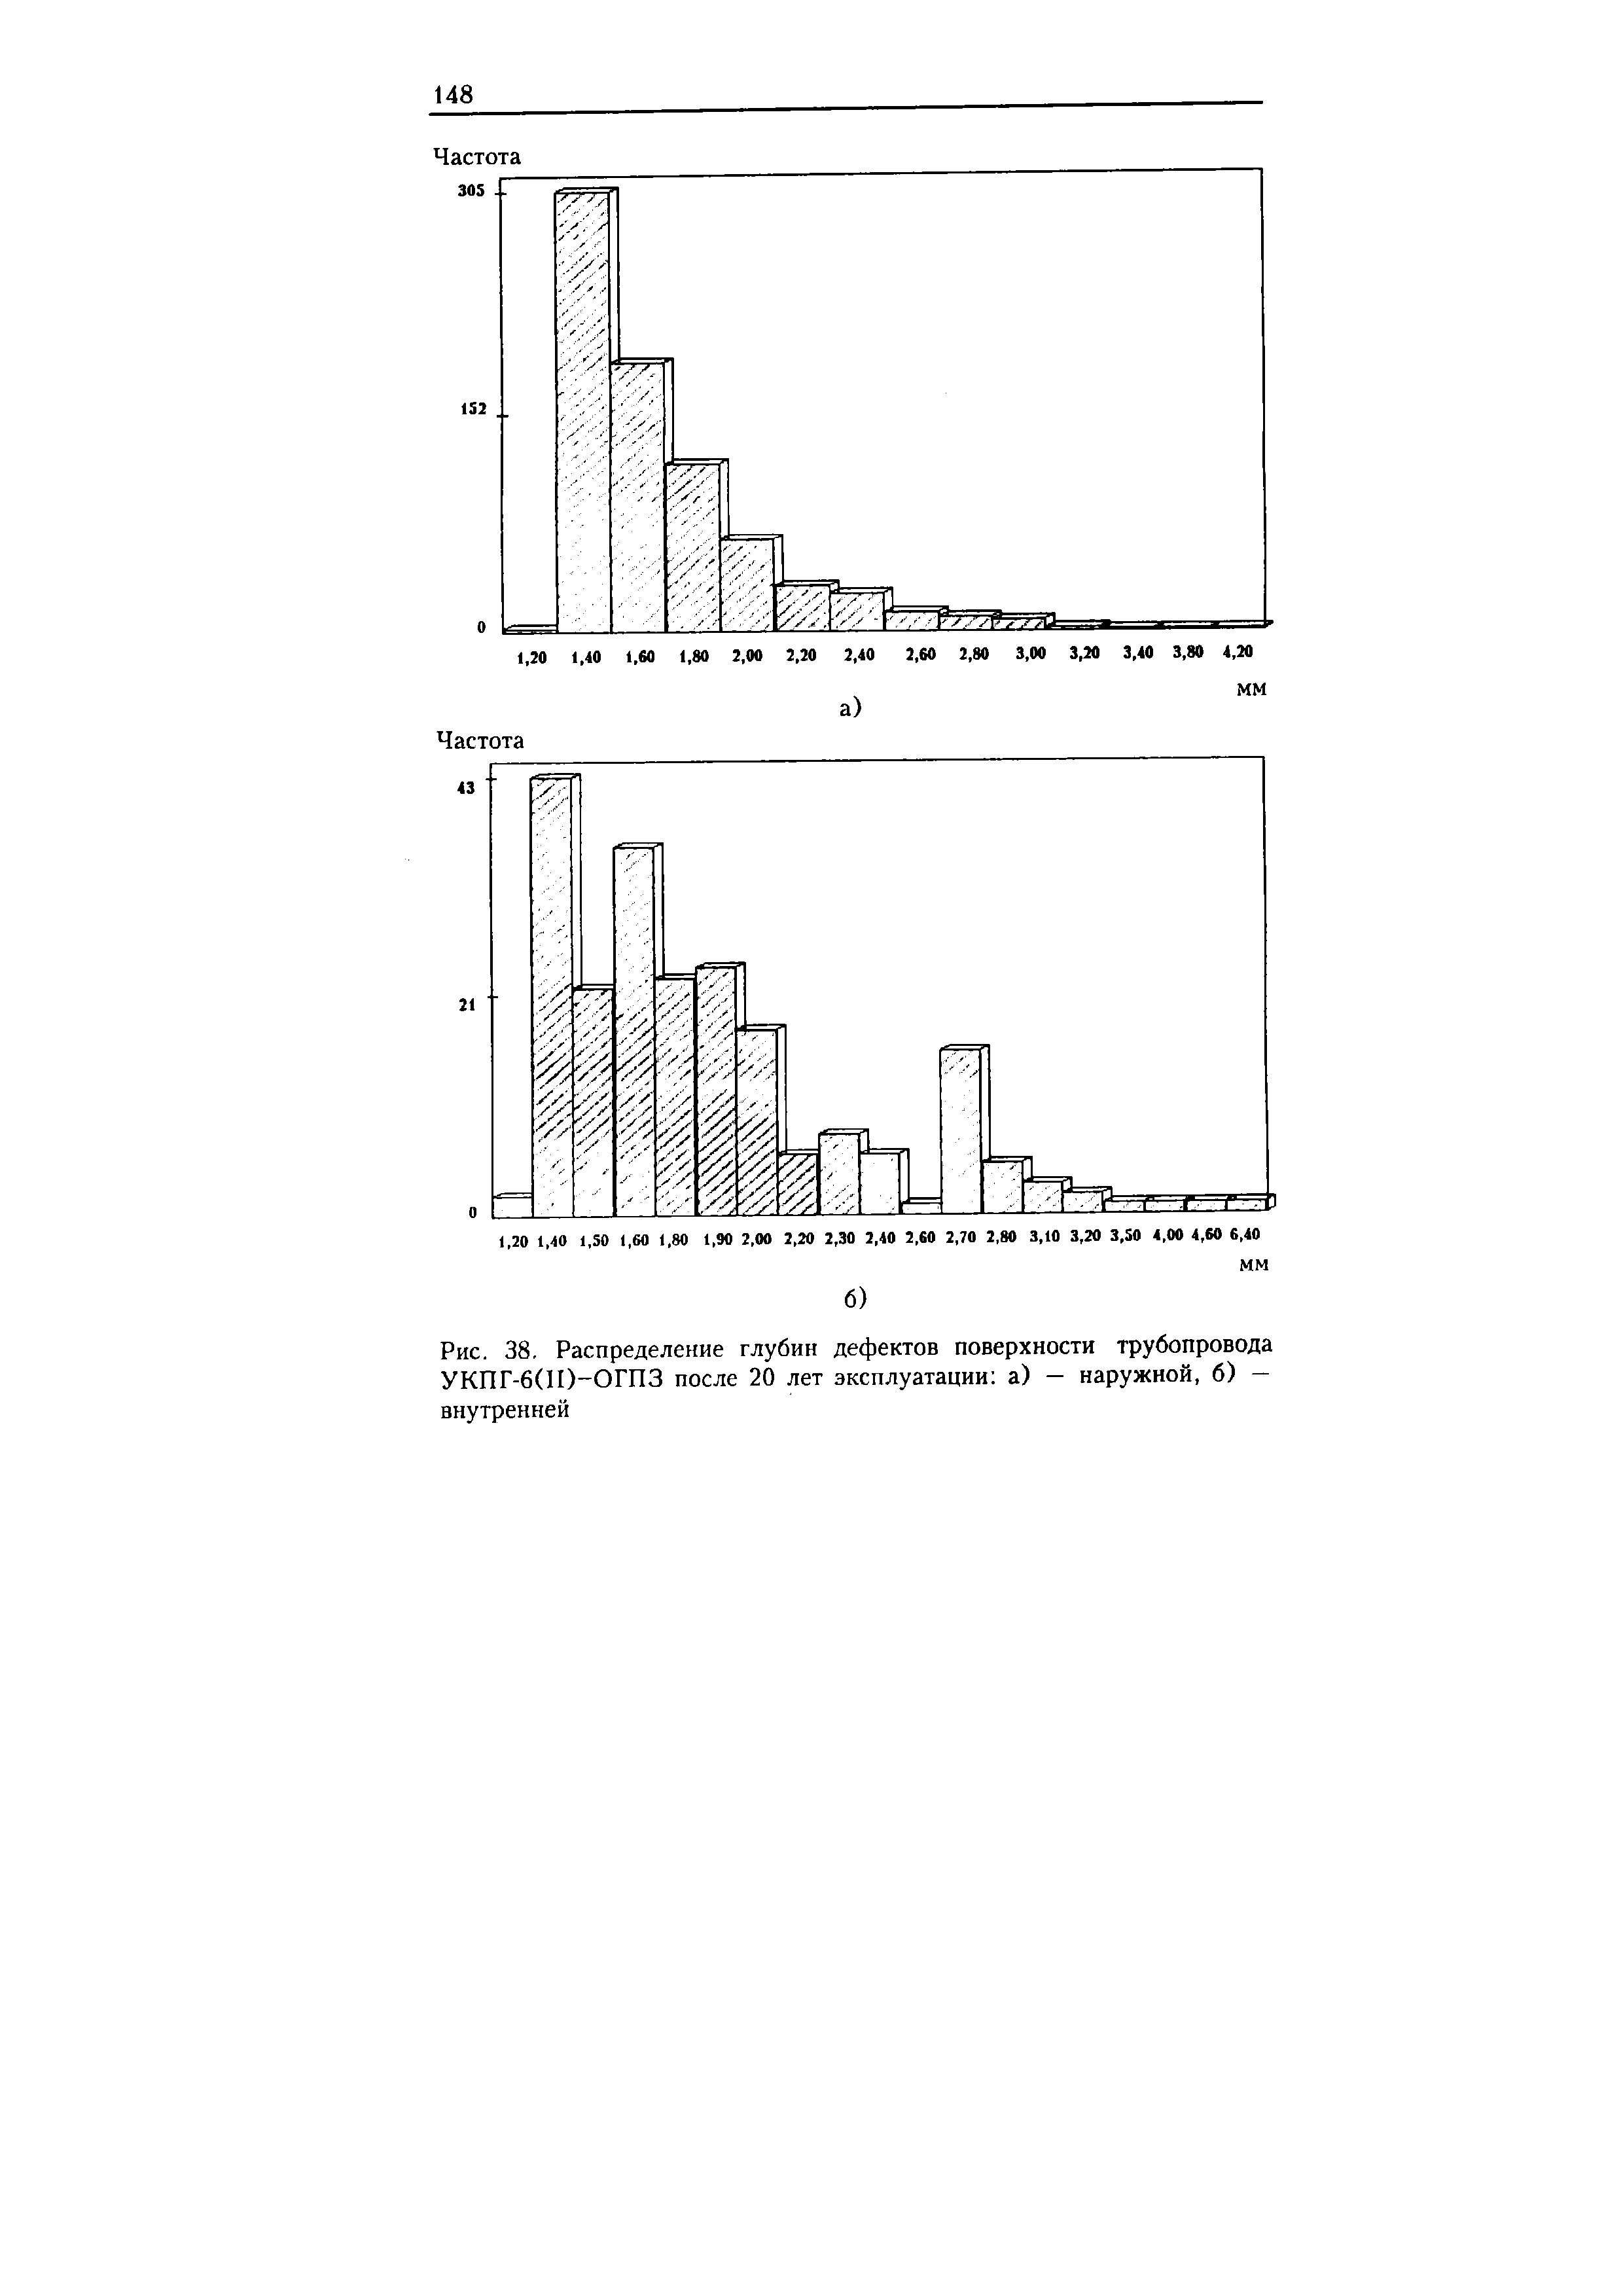 Рис. 38, Распределение глубин дефектов поверхности трубопровода УКПГ-6(И)-ОГПЗ после 20 лет эксплуатации а) — наружной, б) — внутренней